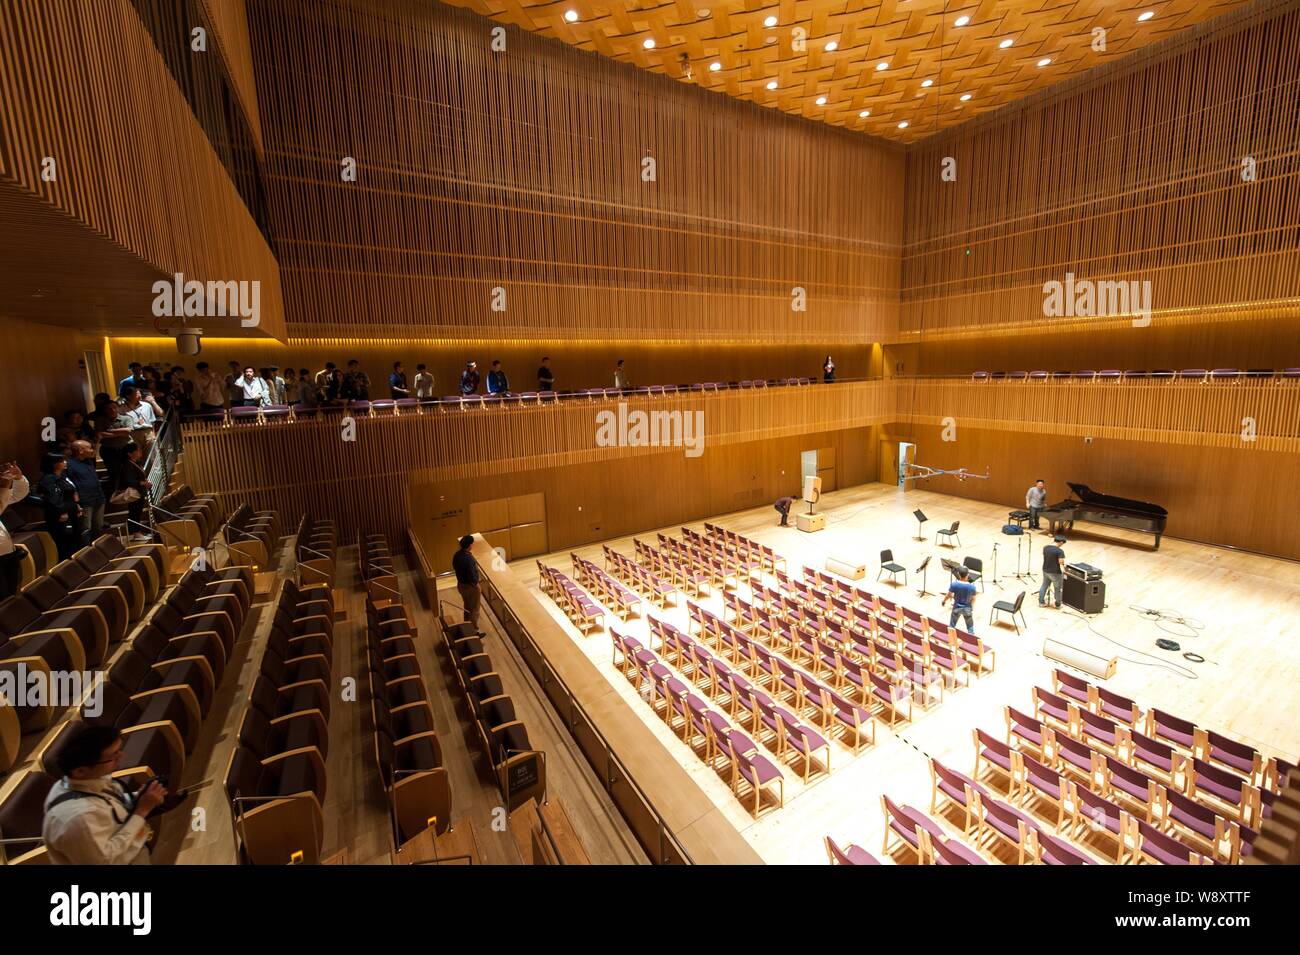 Vue intérieure d'une salle de concert de l'Orchestre symphonique de Shanghai salle conçue par l'architecte japonais Arata Isozaki à Shanghai, Chine, 10 octobre 20 Banque D'Images